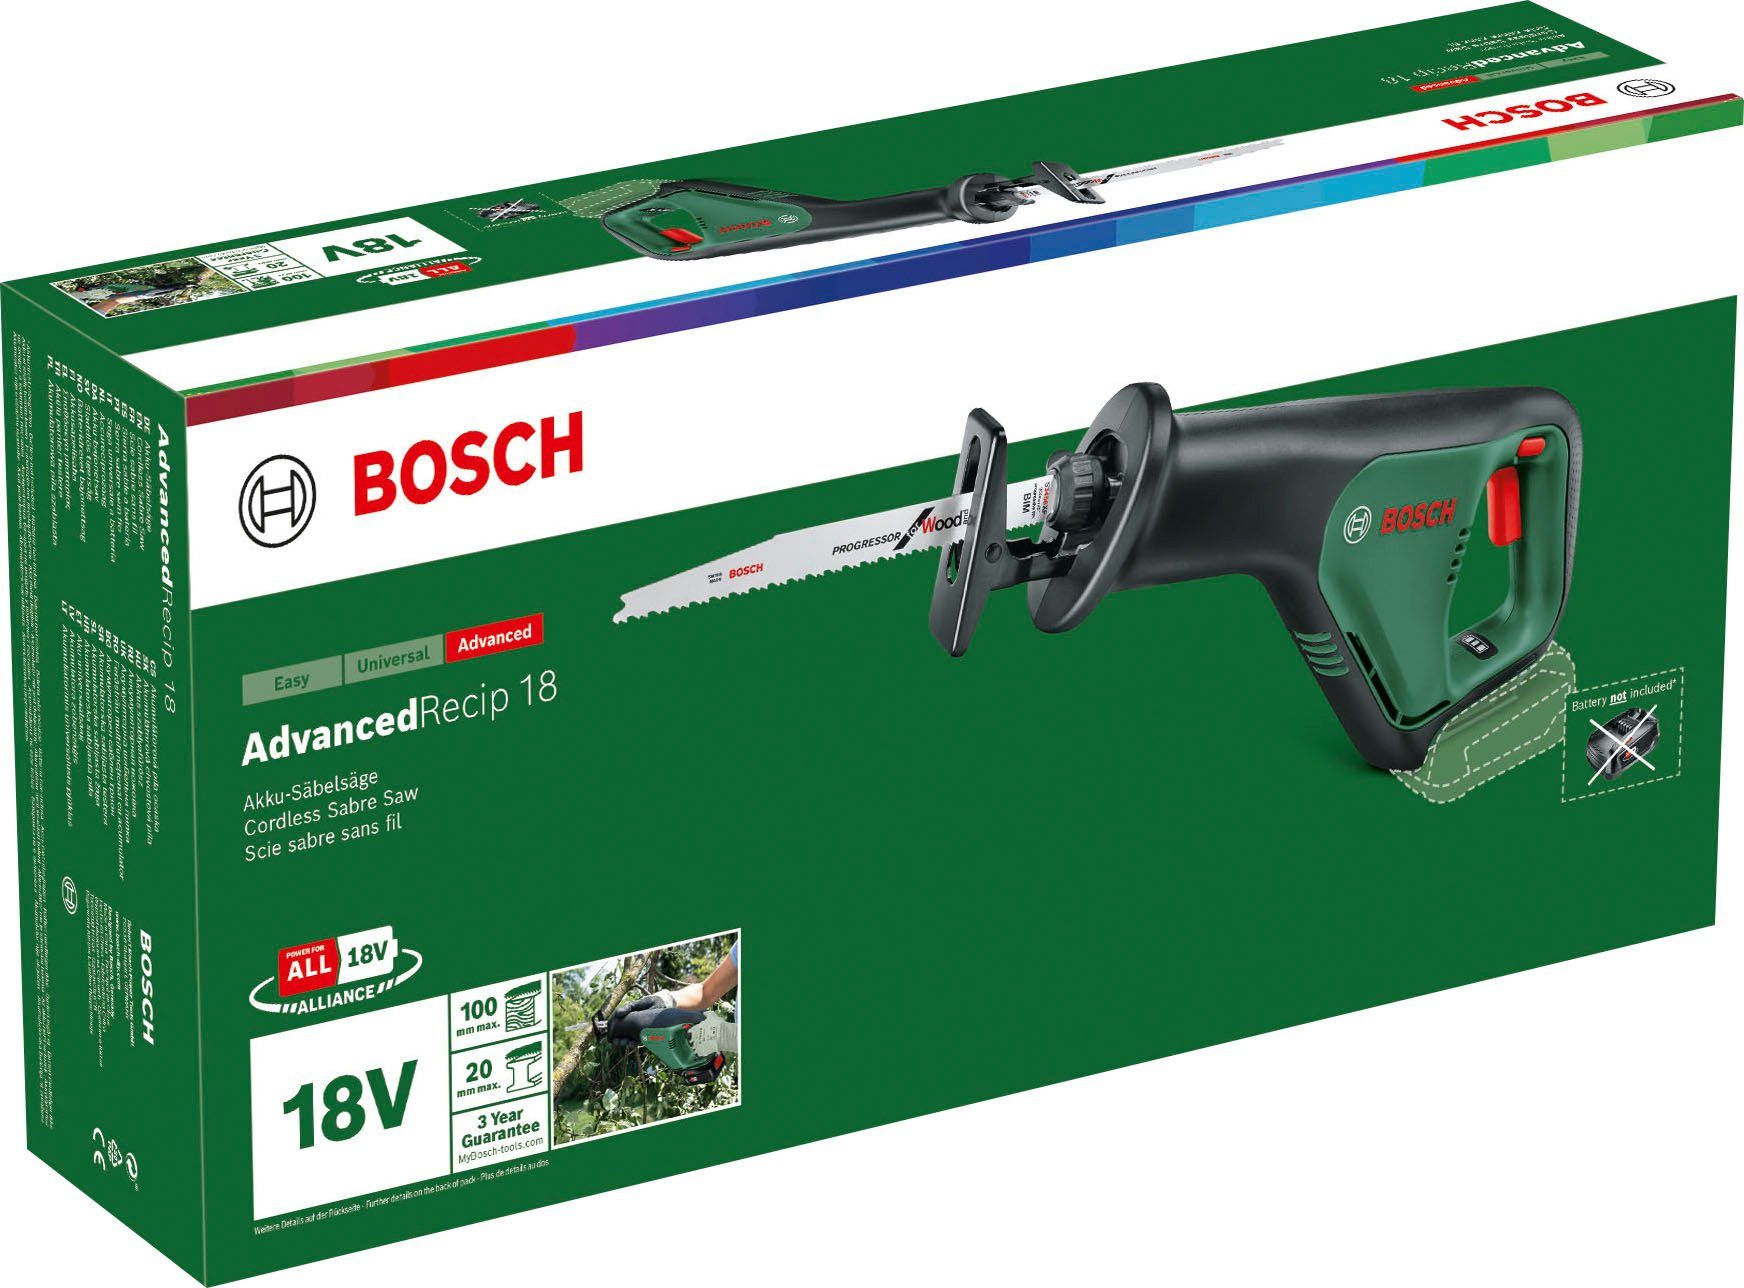 Akku-Säbelsäge 18, Garden und Ladegerät AdvancedRecip Bosch ohne & Home Akku